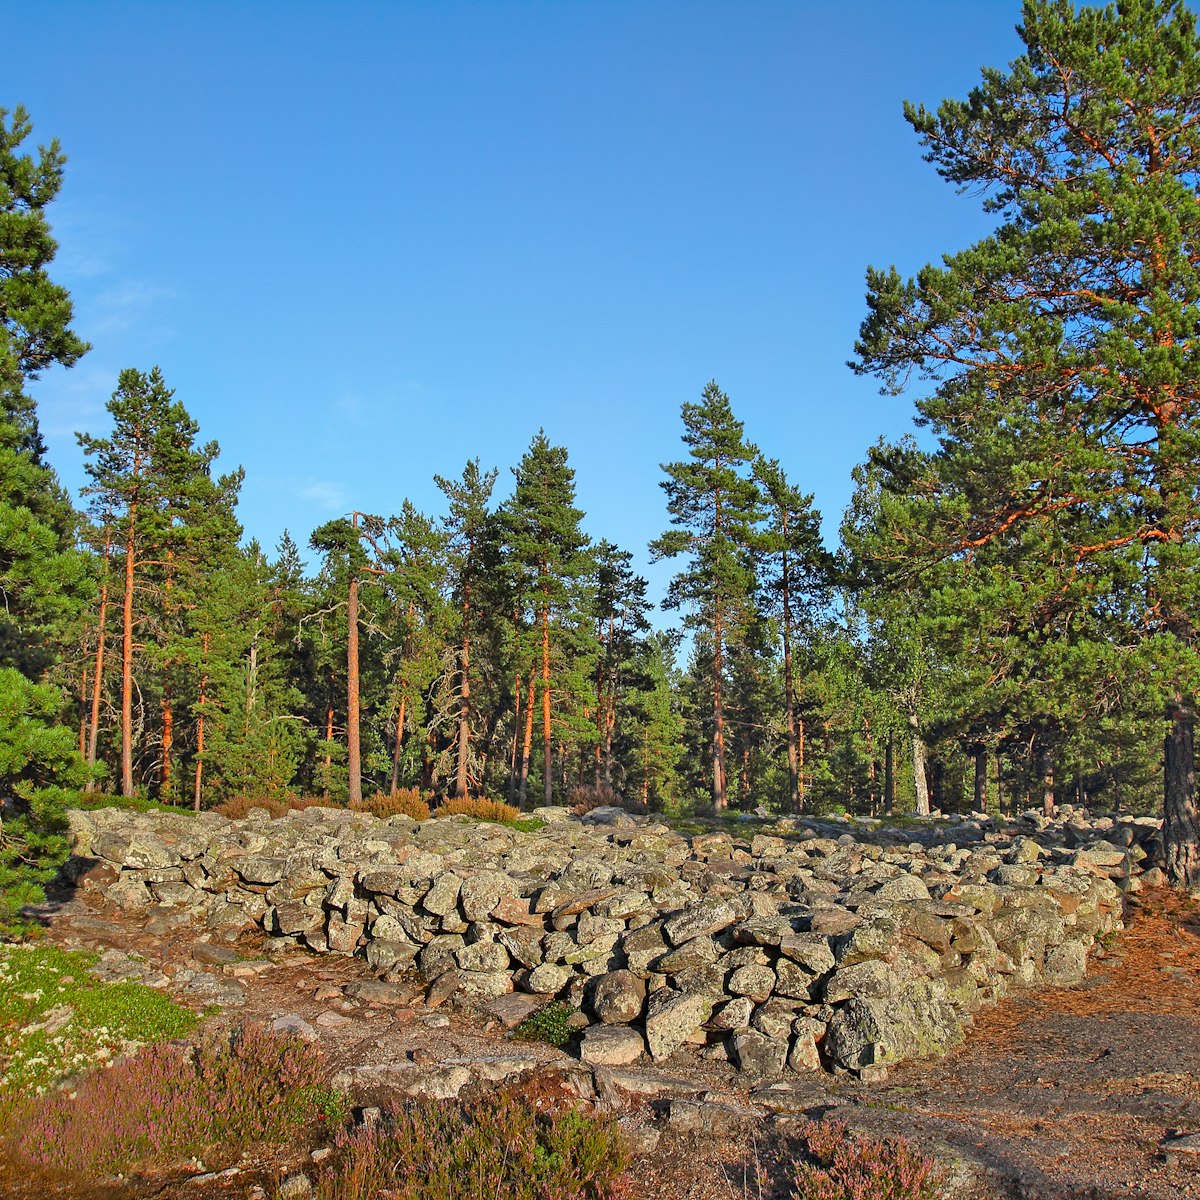 Bronze Age Burial Site of Sammallahdenmäki, Finland, UNESCO World Heritage Site.